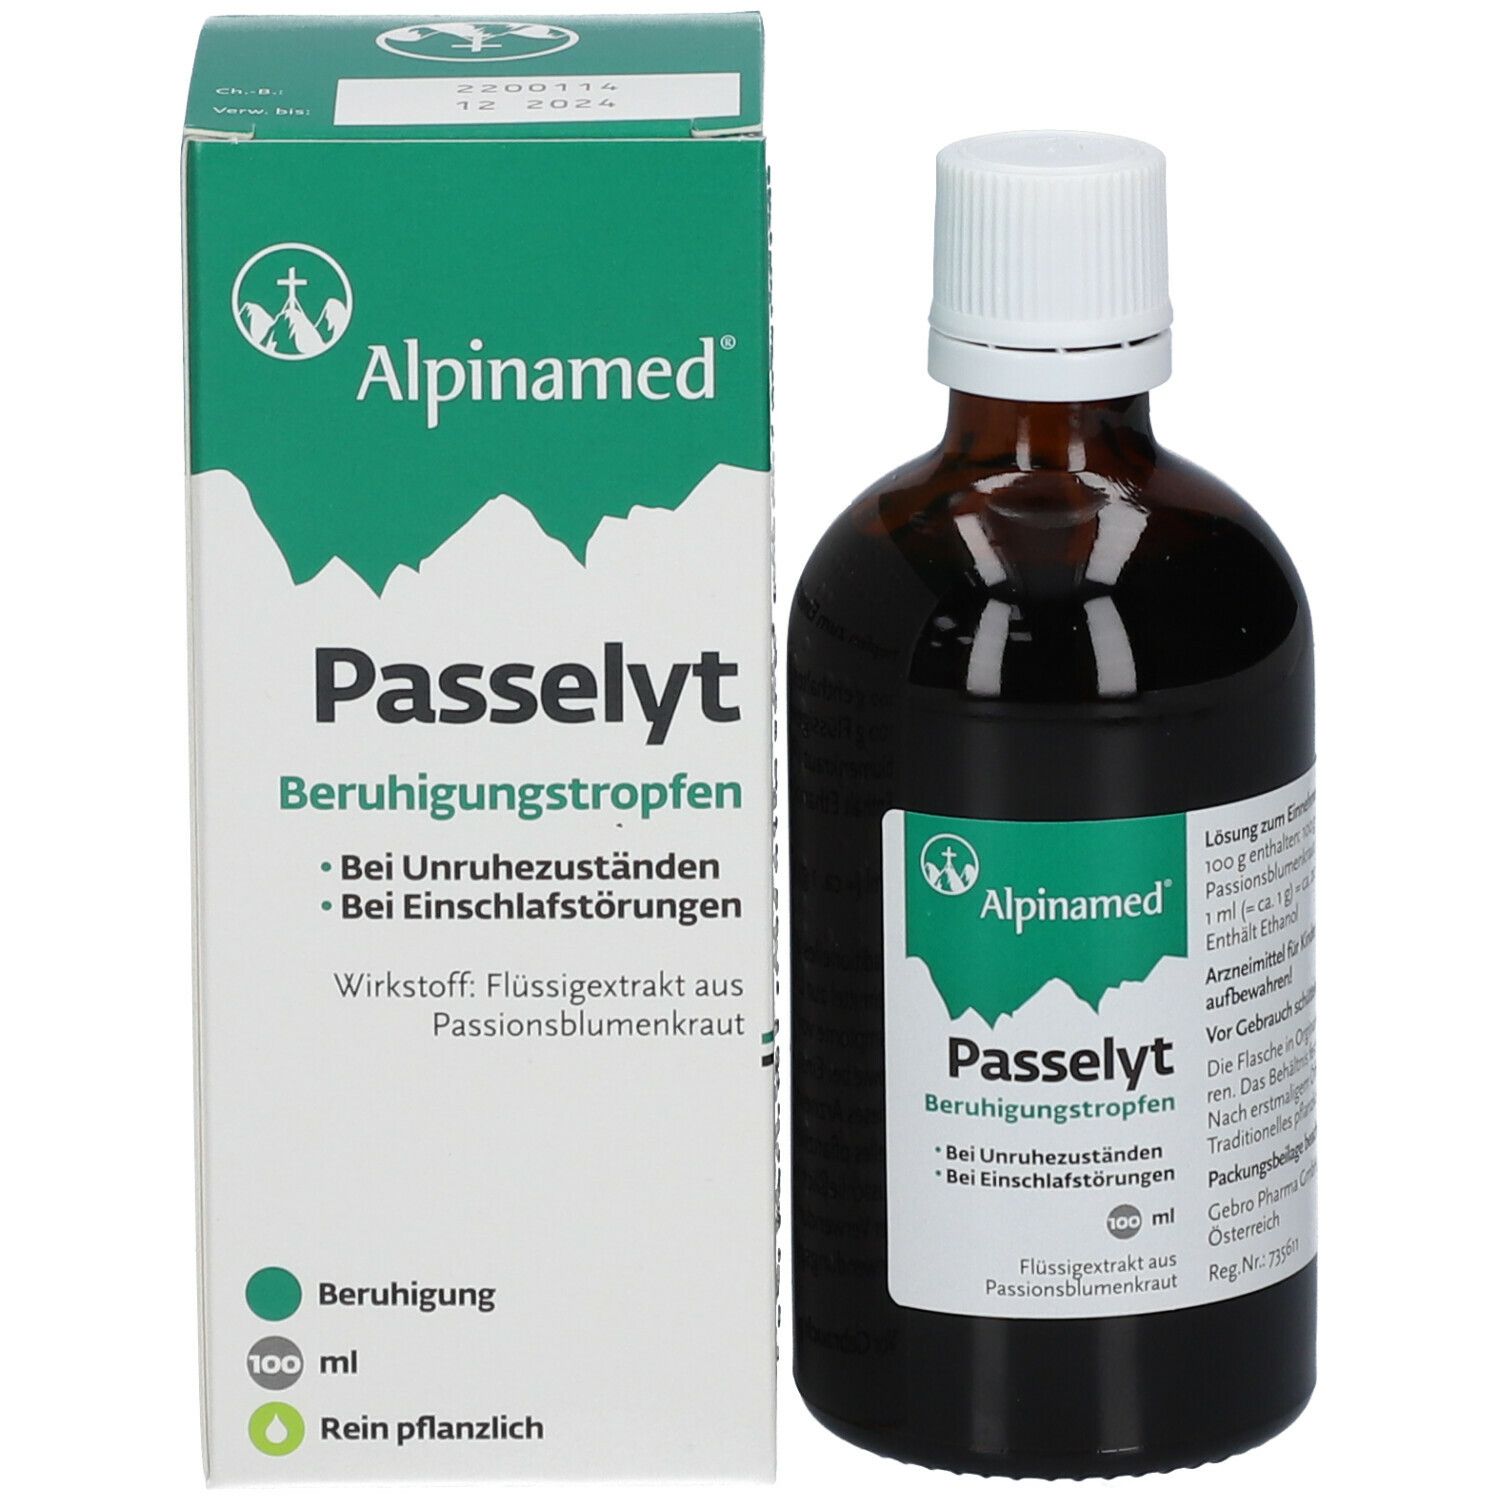 Alpinamed® Passelyt Beruhigungstropfen